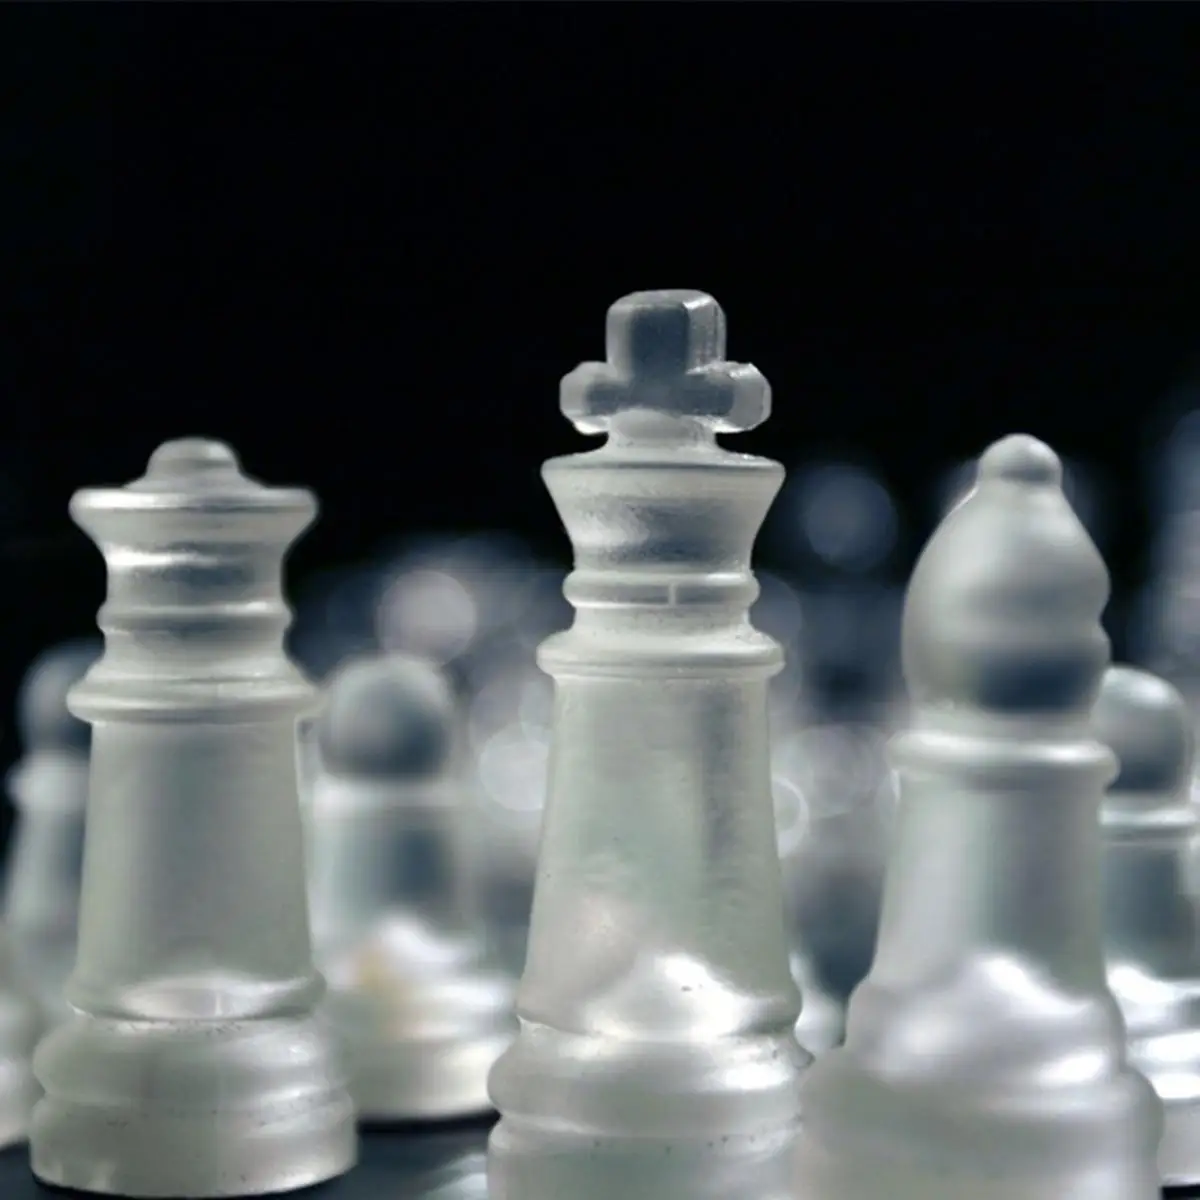 Роскошные элегантные K9 стеклянные шахматы средняя упаковка для борьбы Международная шахматная игра дорожный Шахматный набор Стеклянная Доска шахматная игра